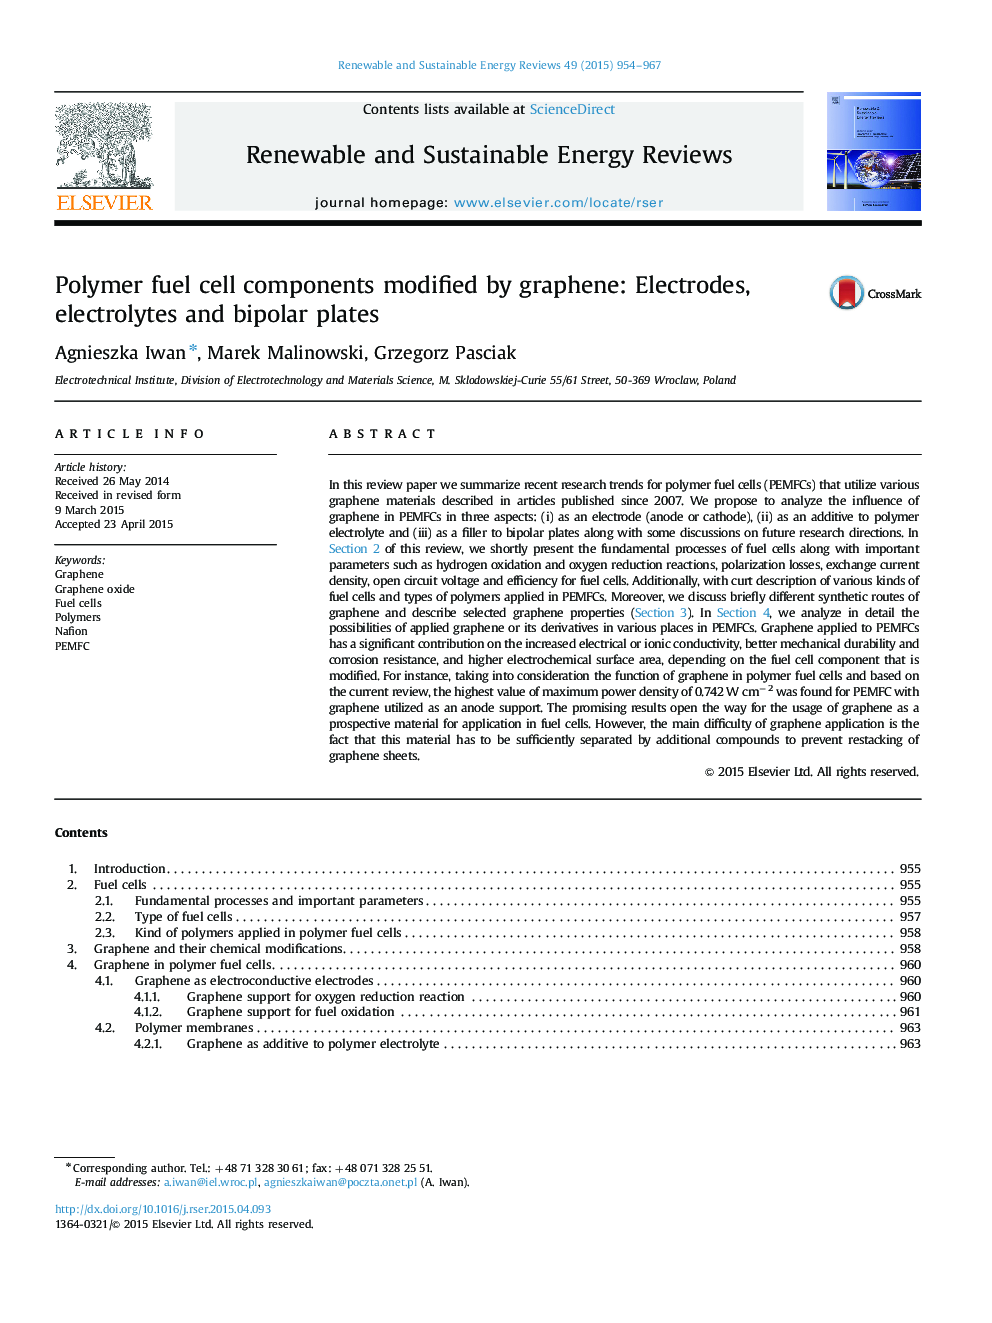 اجزای سلول سوختی پلیمر توسط گرافن اصلاح شده: الکترودها، الکترولیت ها و صفحات دو قطبی 